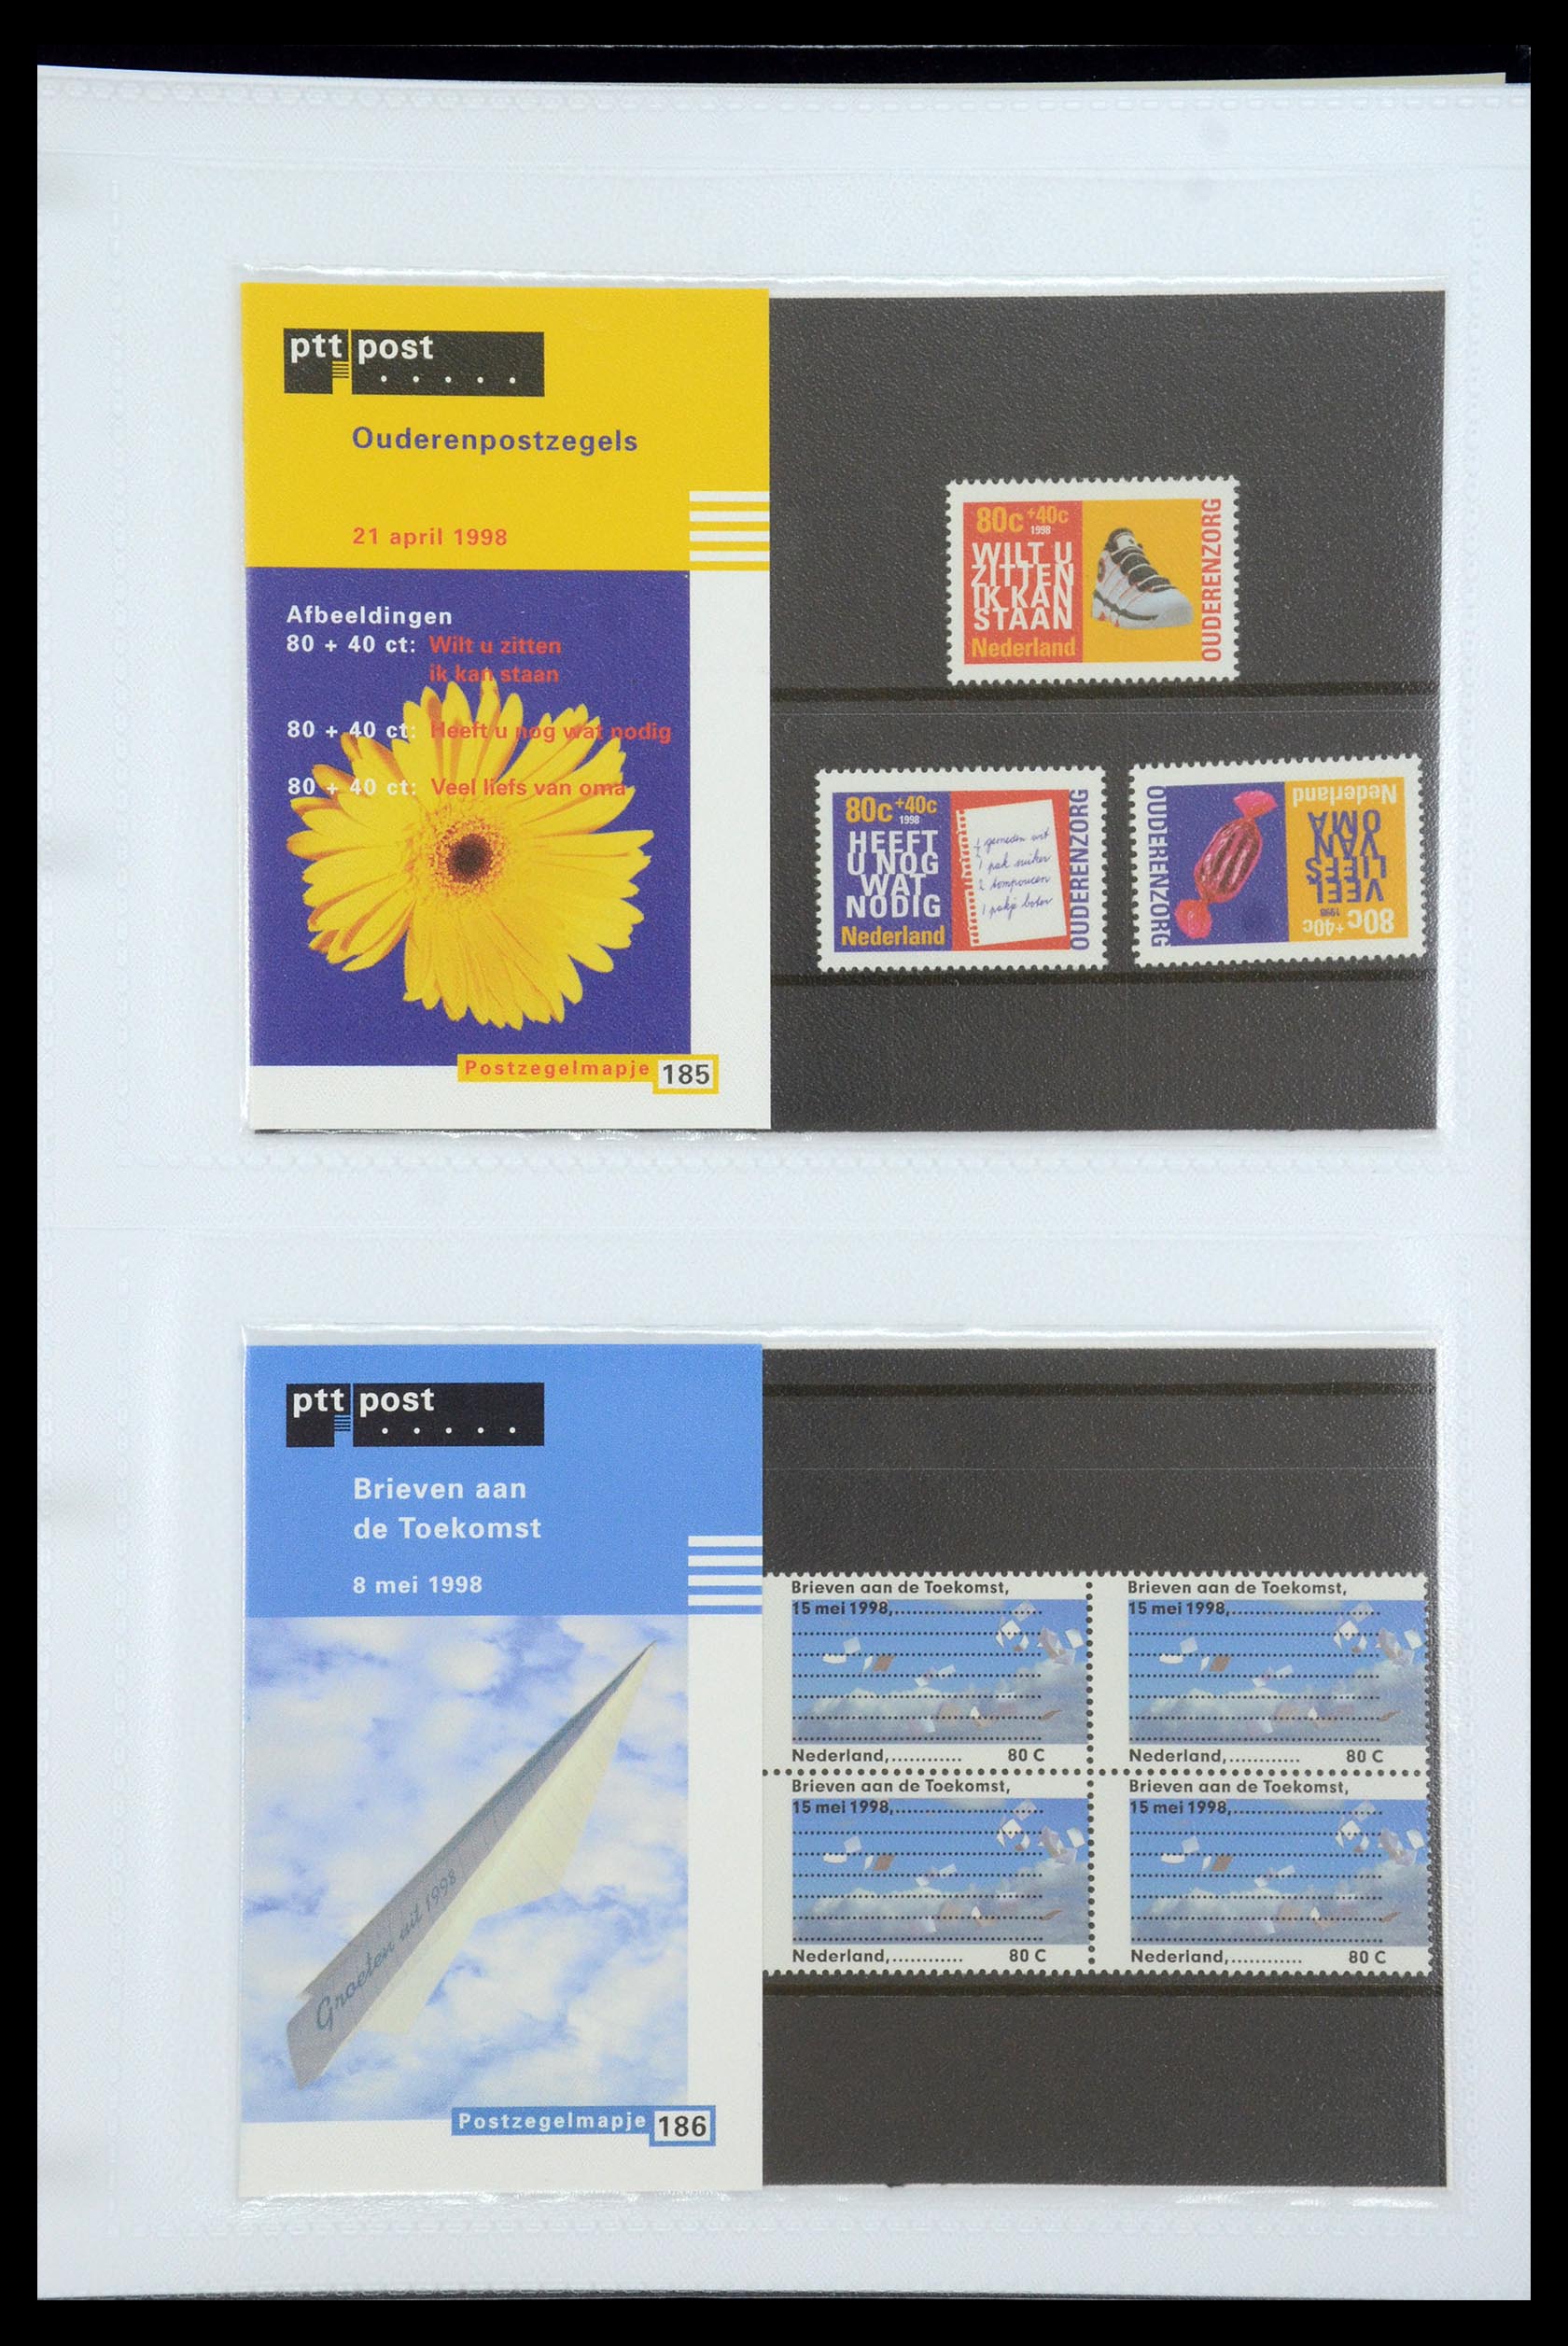 35947 096 - Stamp Collection 35947 Netherlands PTT presentation packs 1982-2019!